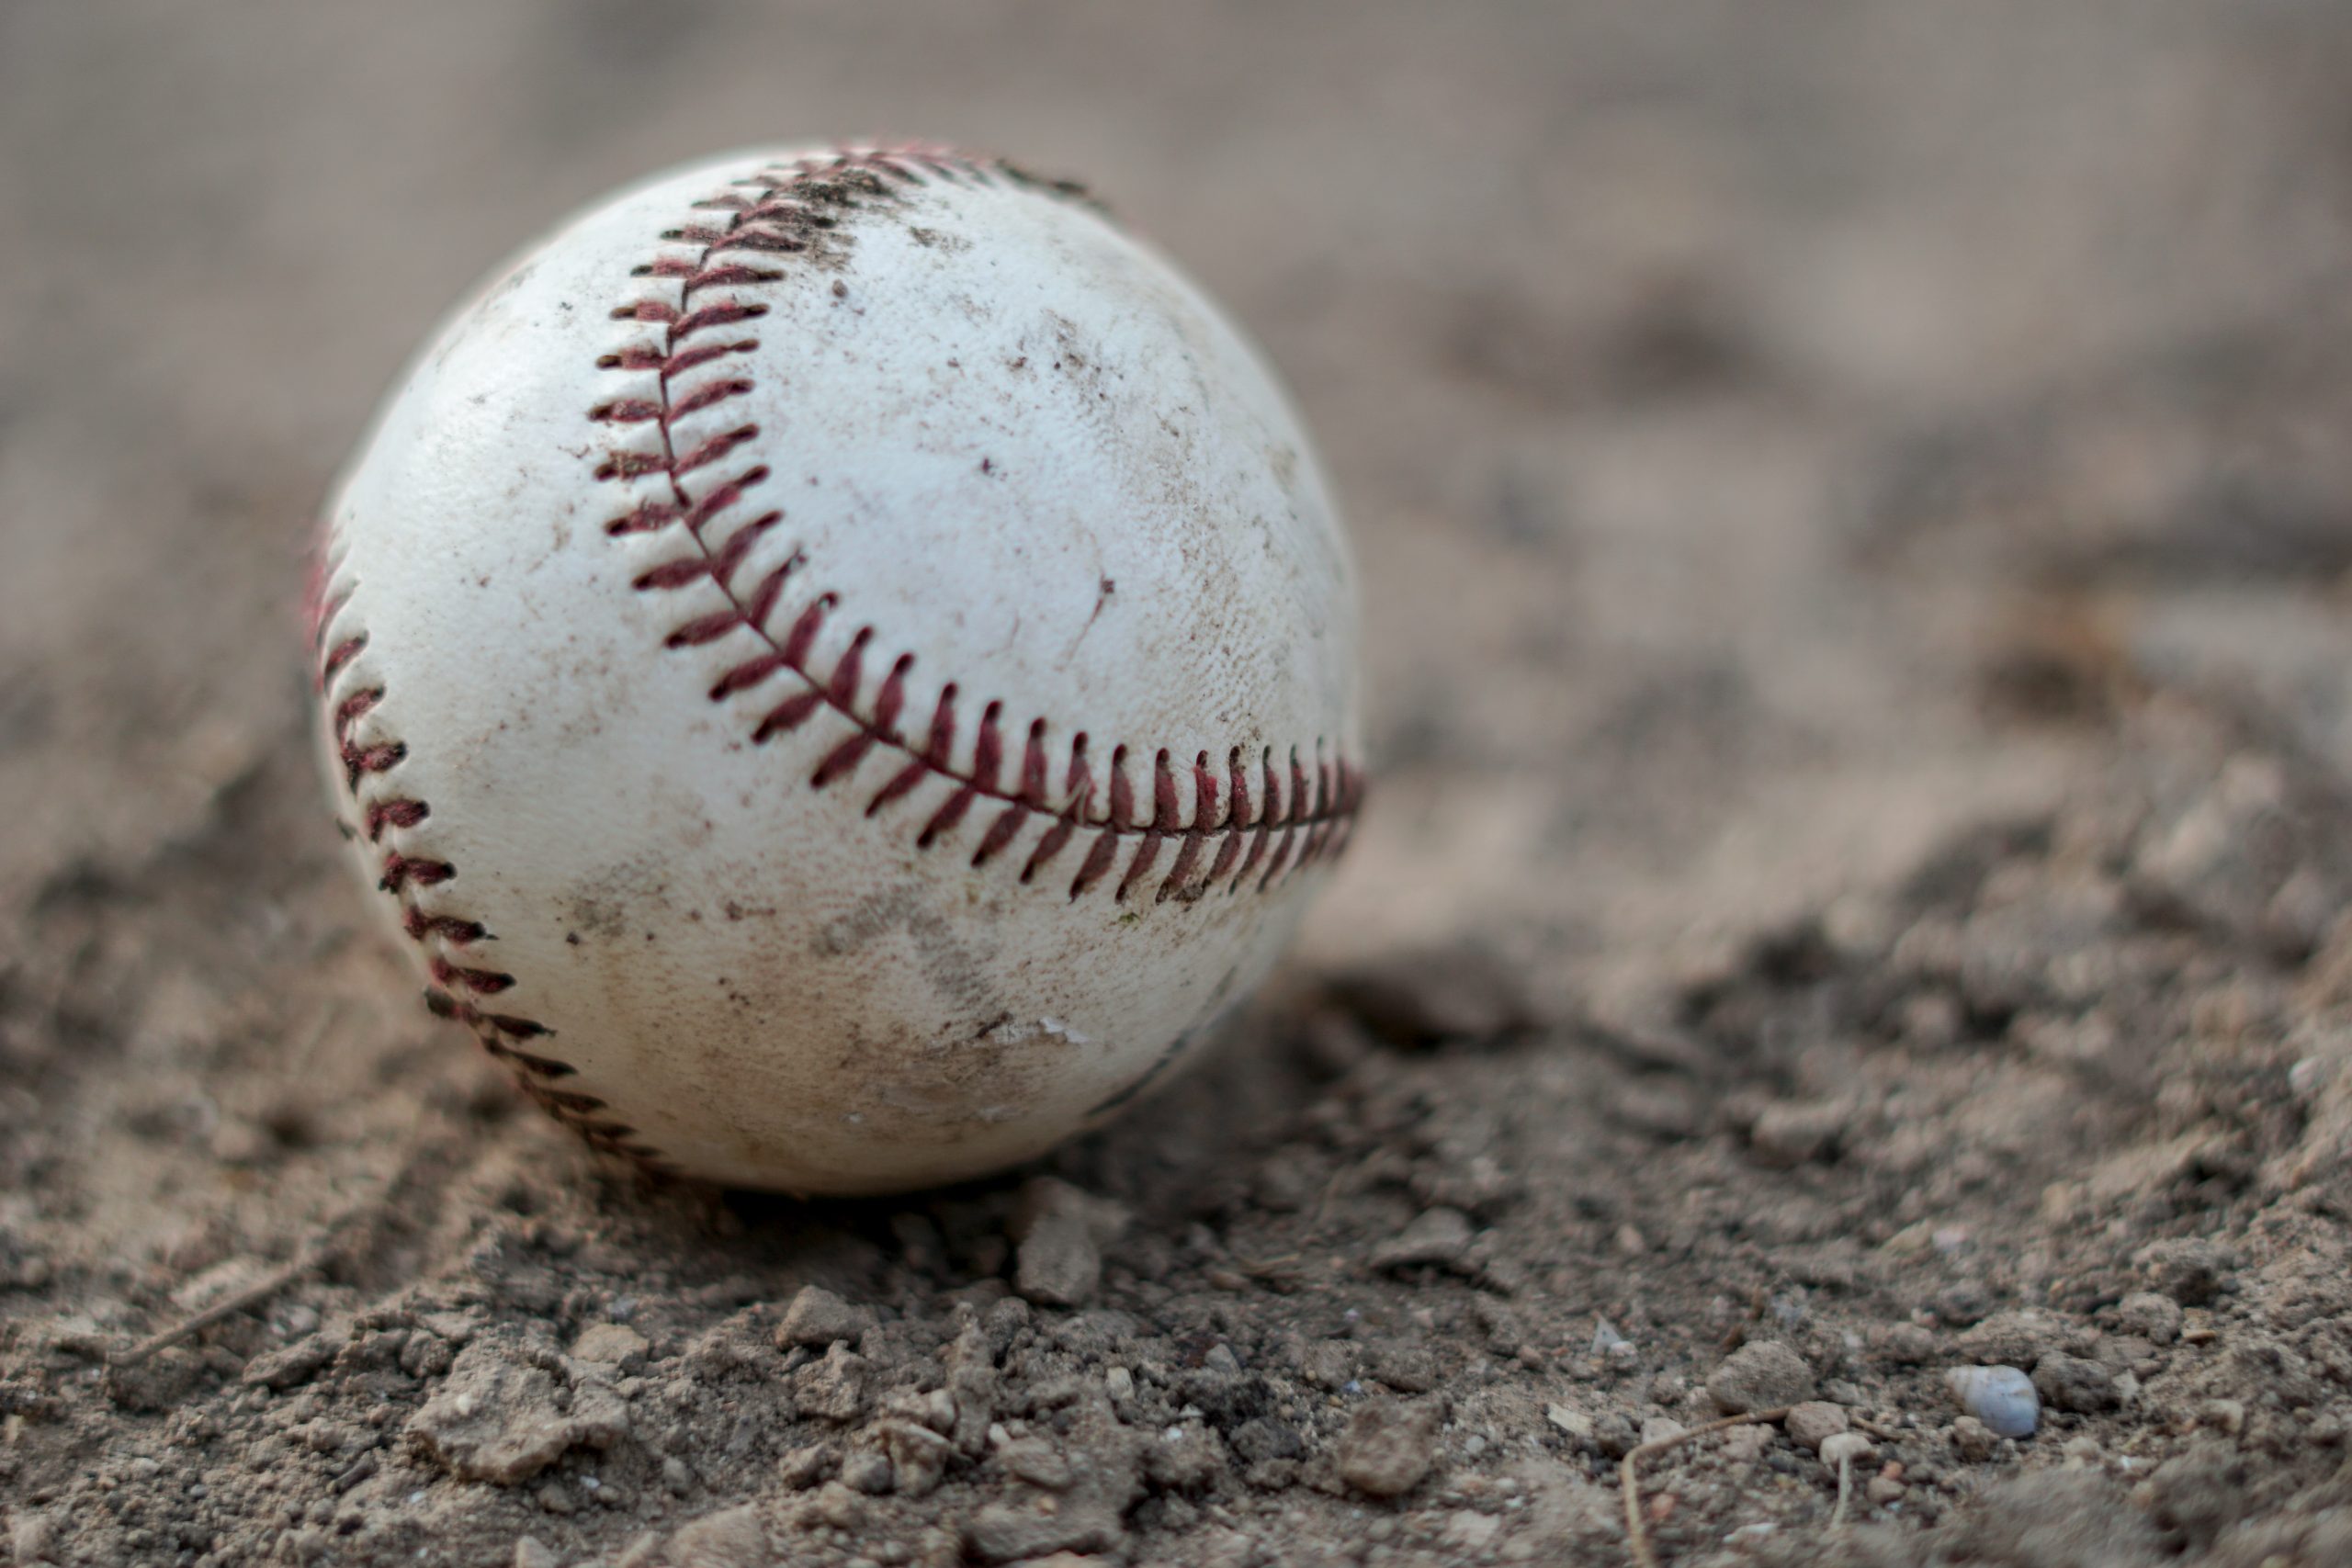 Baseball in Texas as a sports souvenir